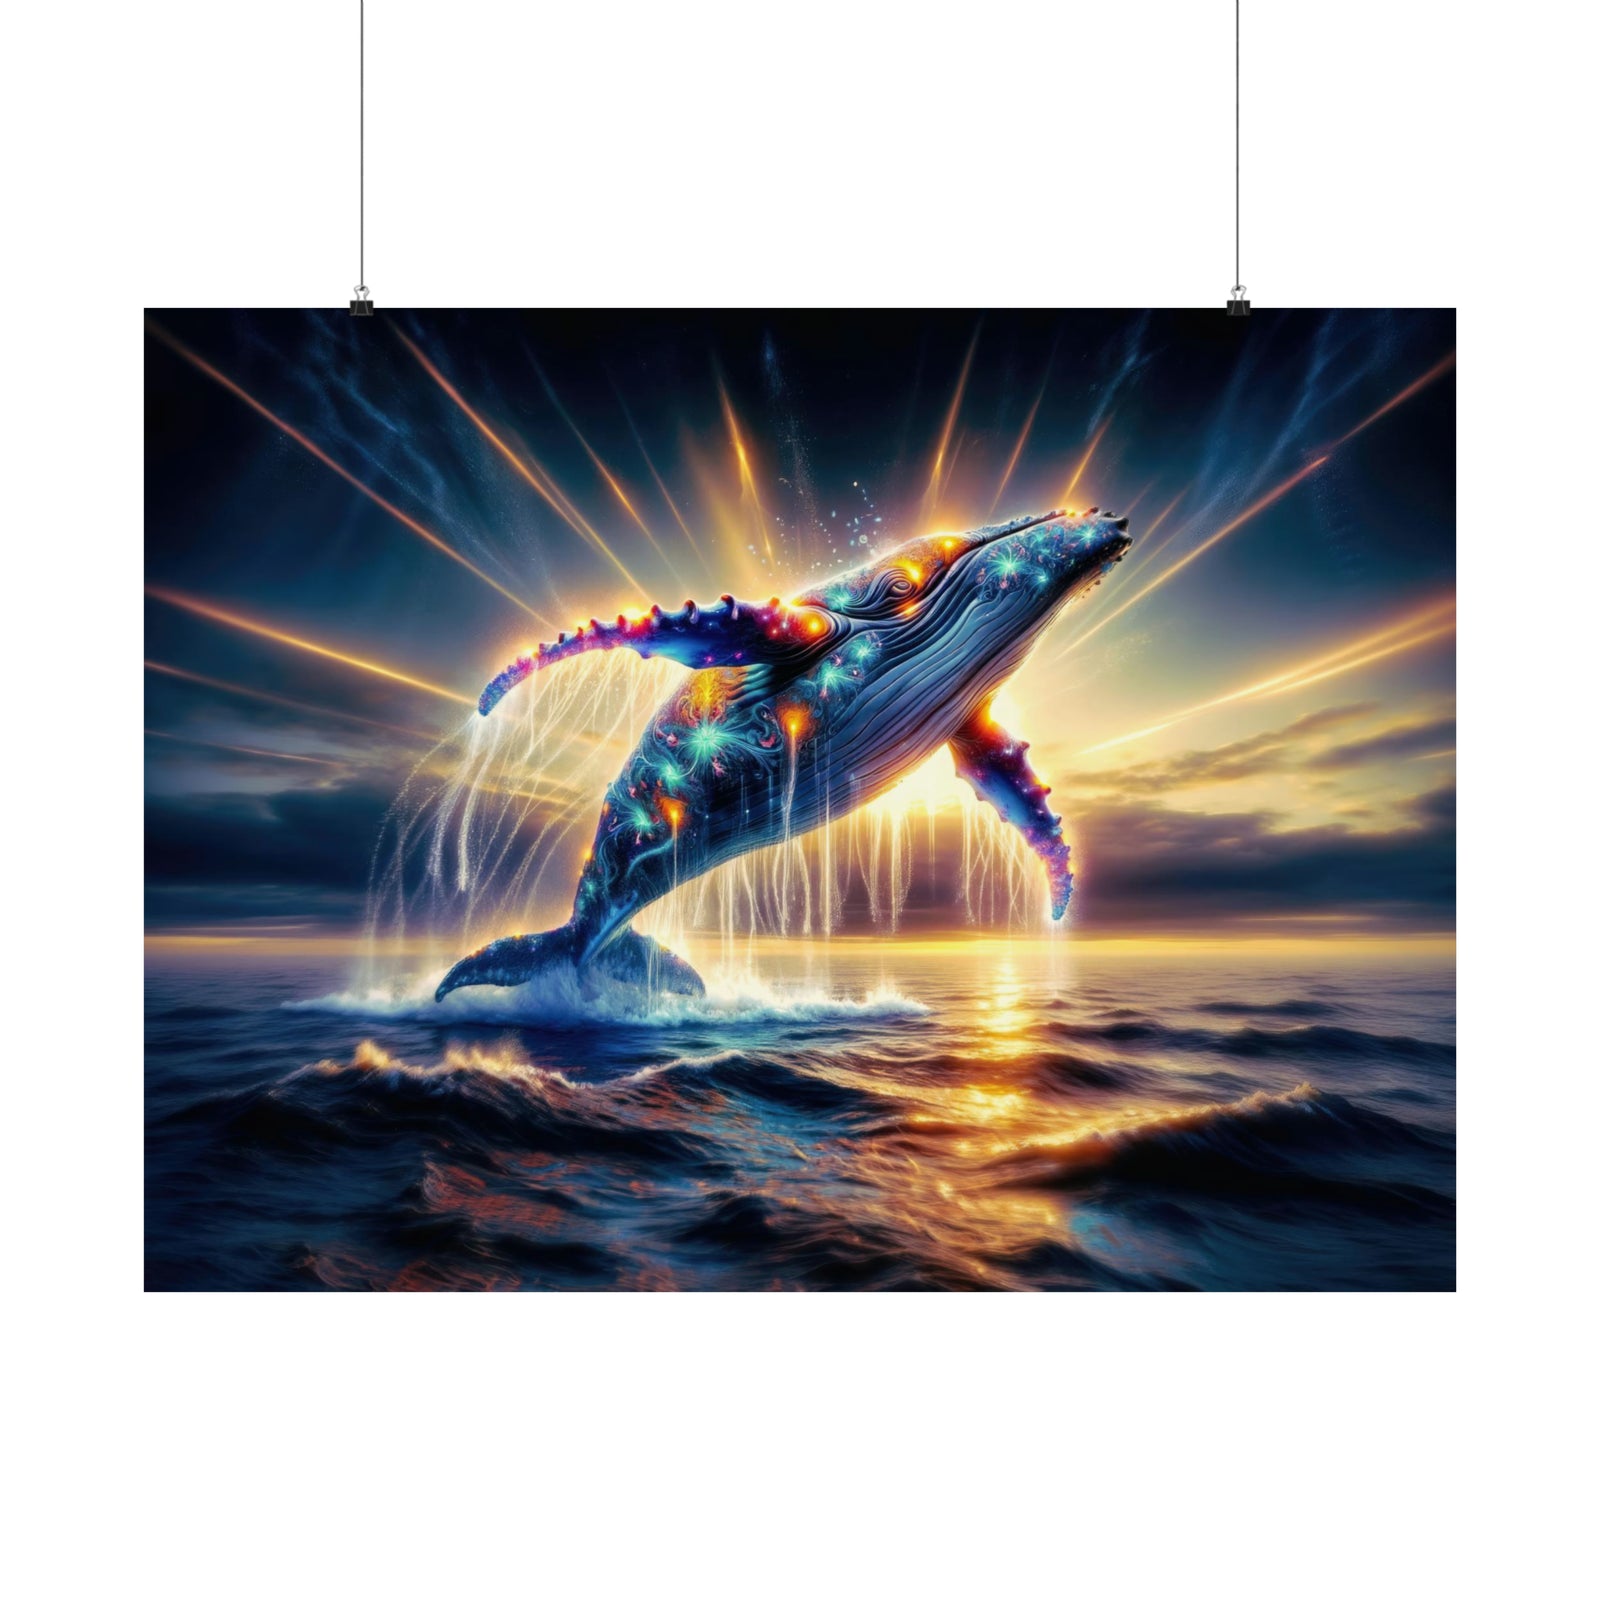 Le saut quantique de la baleine au néon Poster